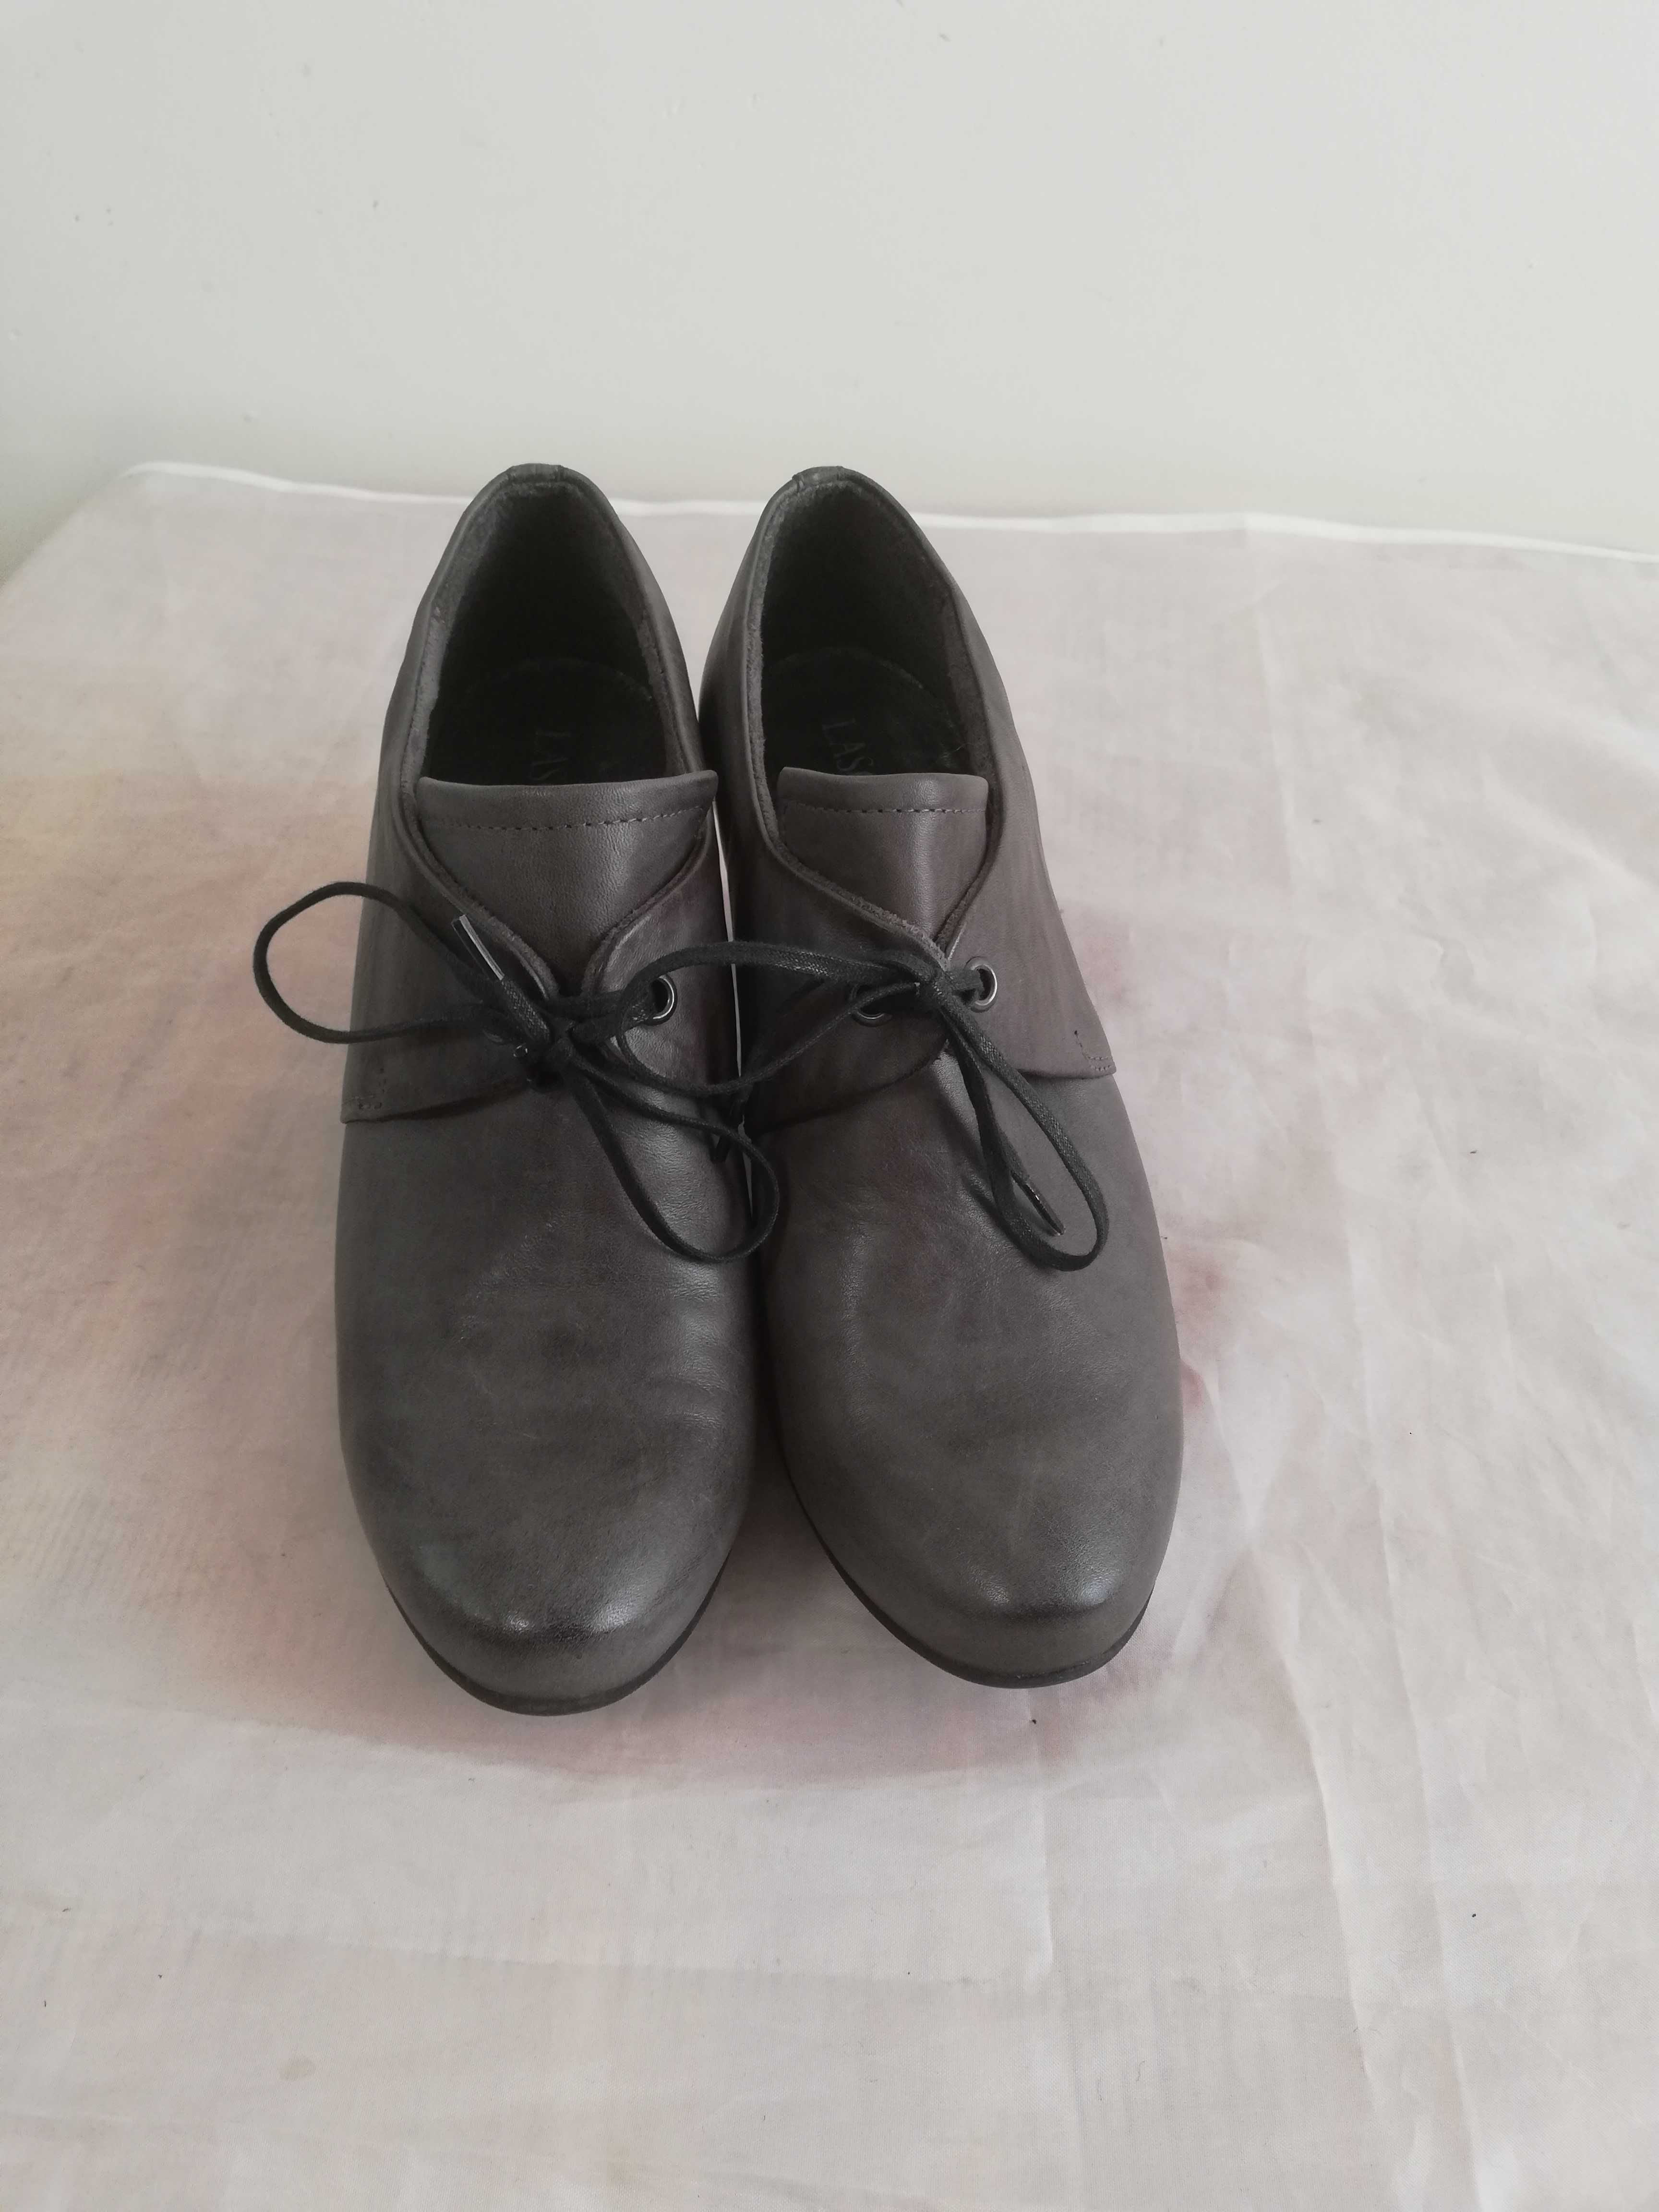 Buty czółenka skórzane Lasocki r. 37 , wkł 24 cm